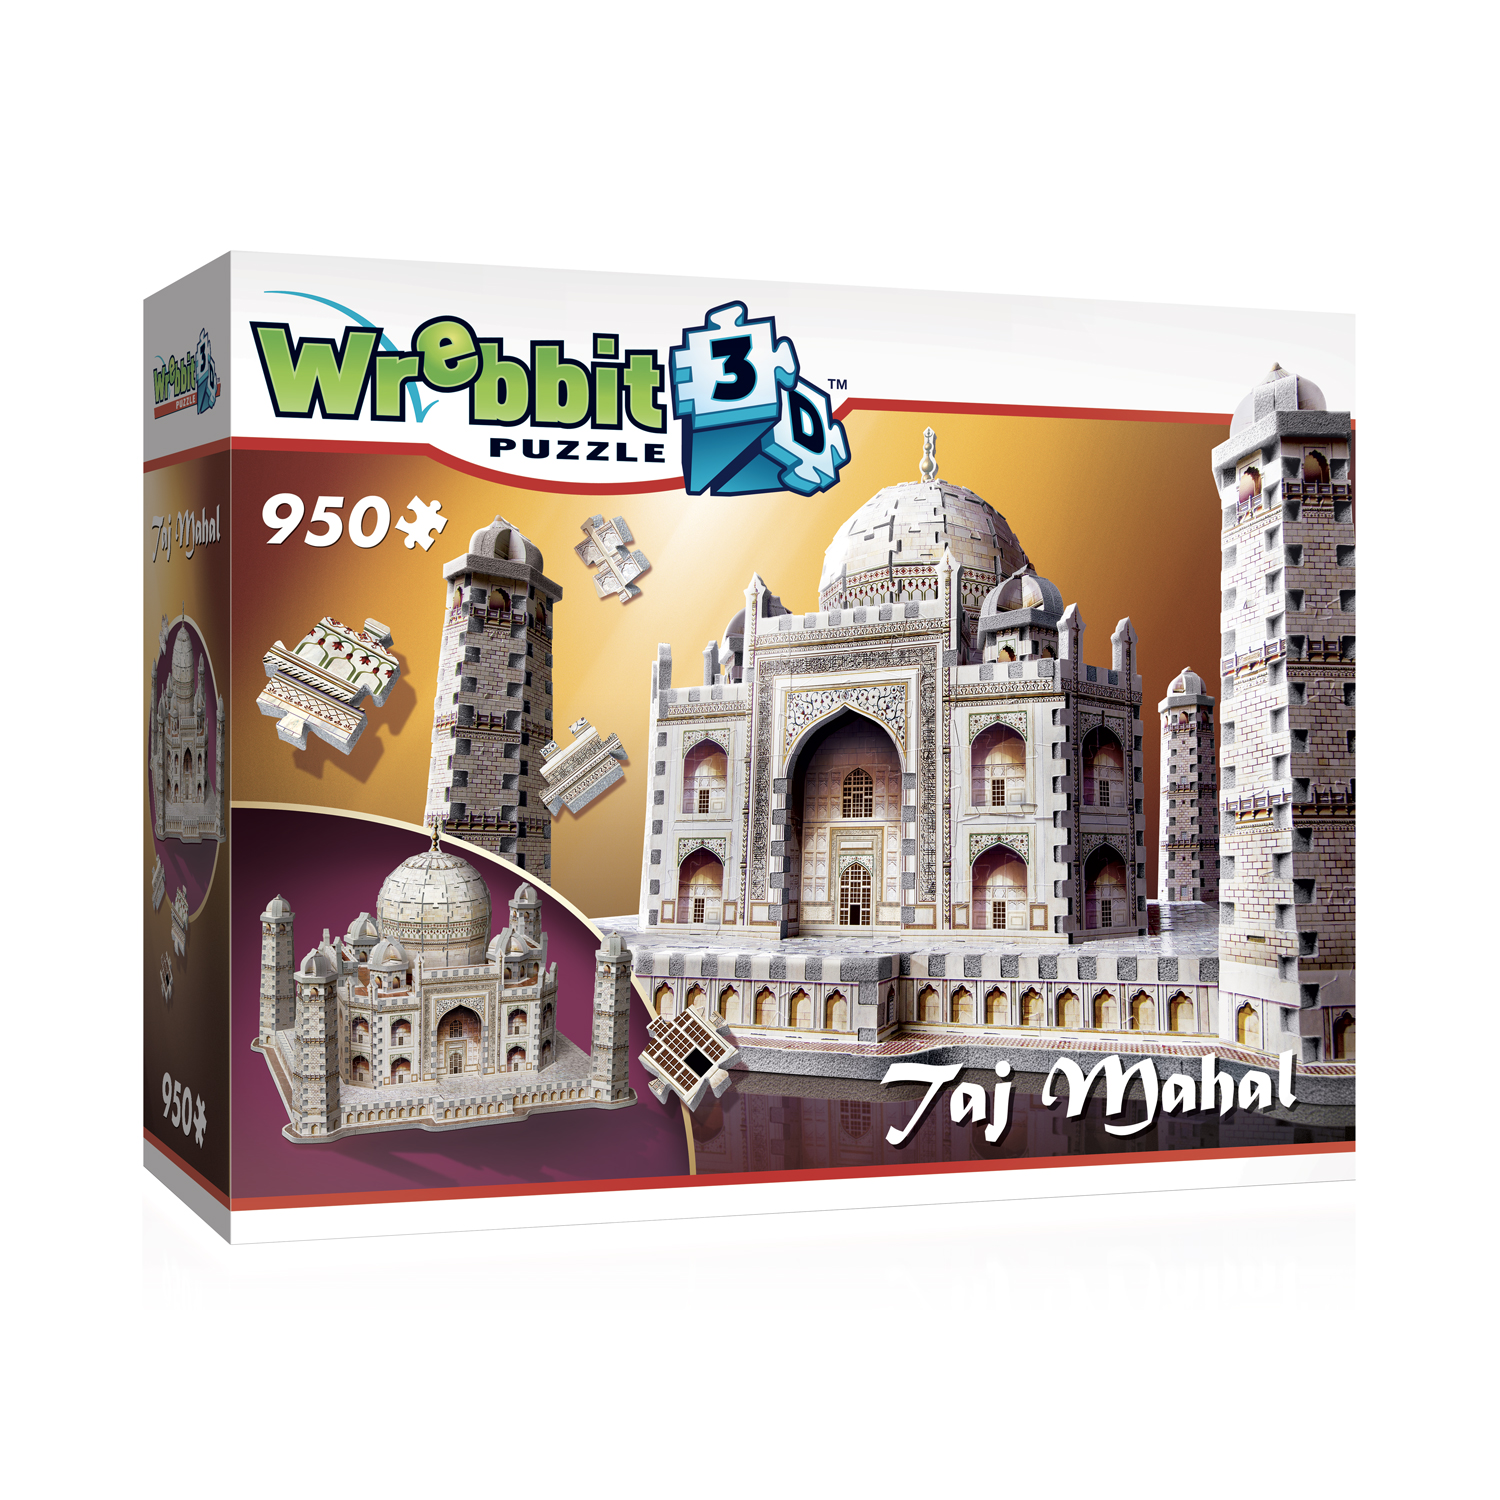 3D Puzzle Welt Berühmte Puzzle Taj Mahal Indien Empire State Building Stonehenge 